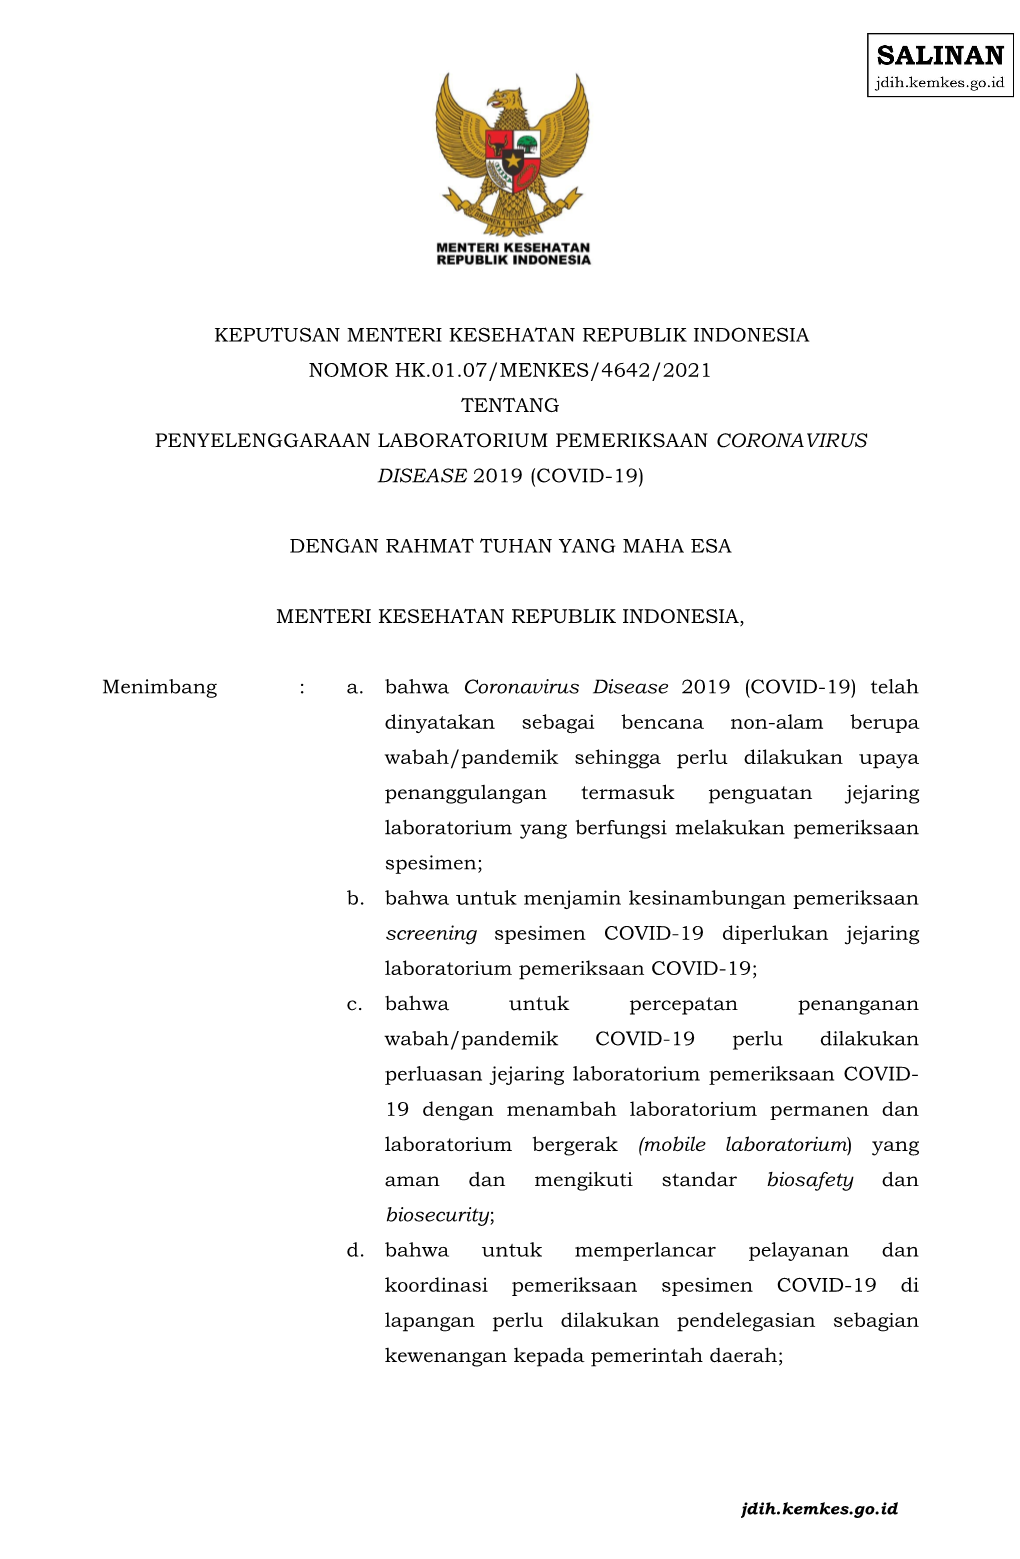 Keputusan Menteri Kesehatan Republik Indonesia Nomor Hk.01.07/Menkes/4642/2021 Tentang Penyelenggaraan Laboratorium Pemeriksaan Coronavirus Disease 2019 (Covid-19)